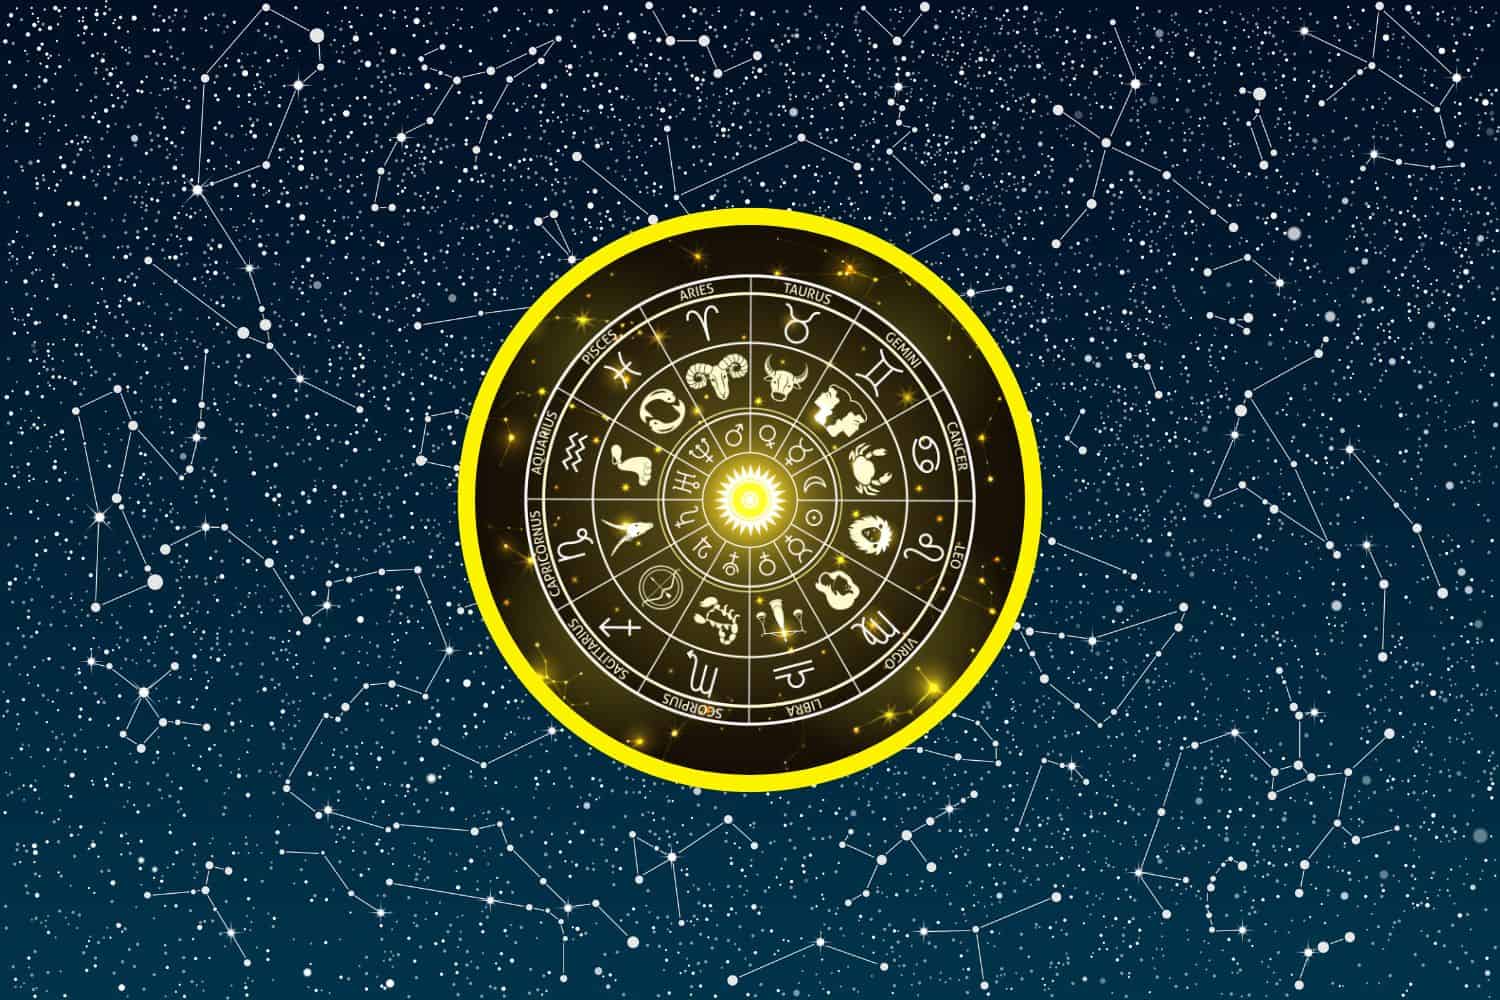 Today’s Free Horoscopes Tuesday